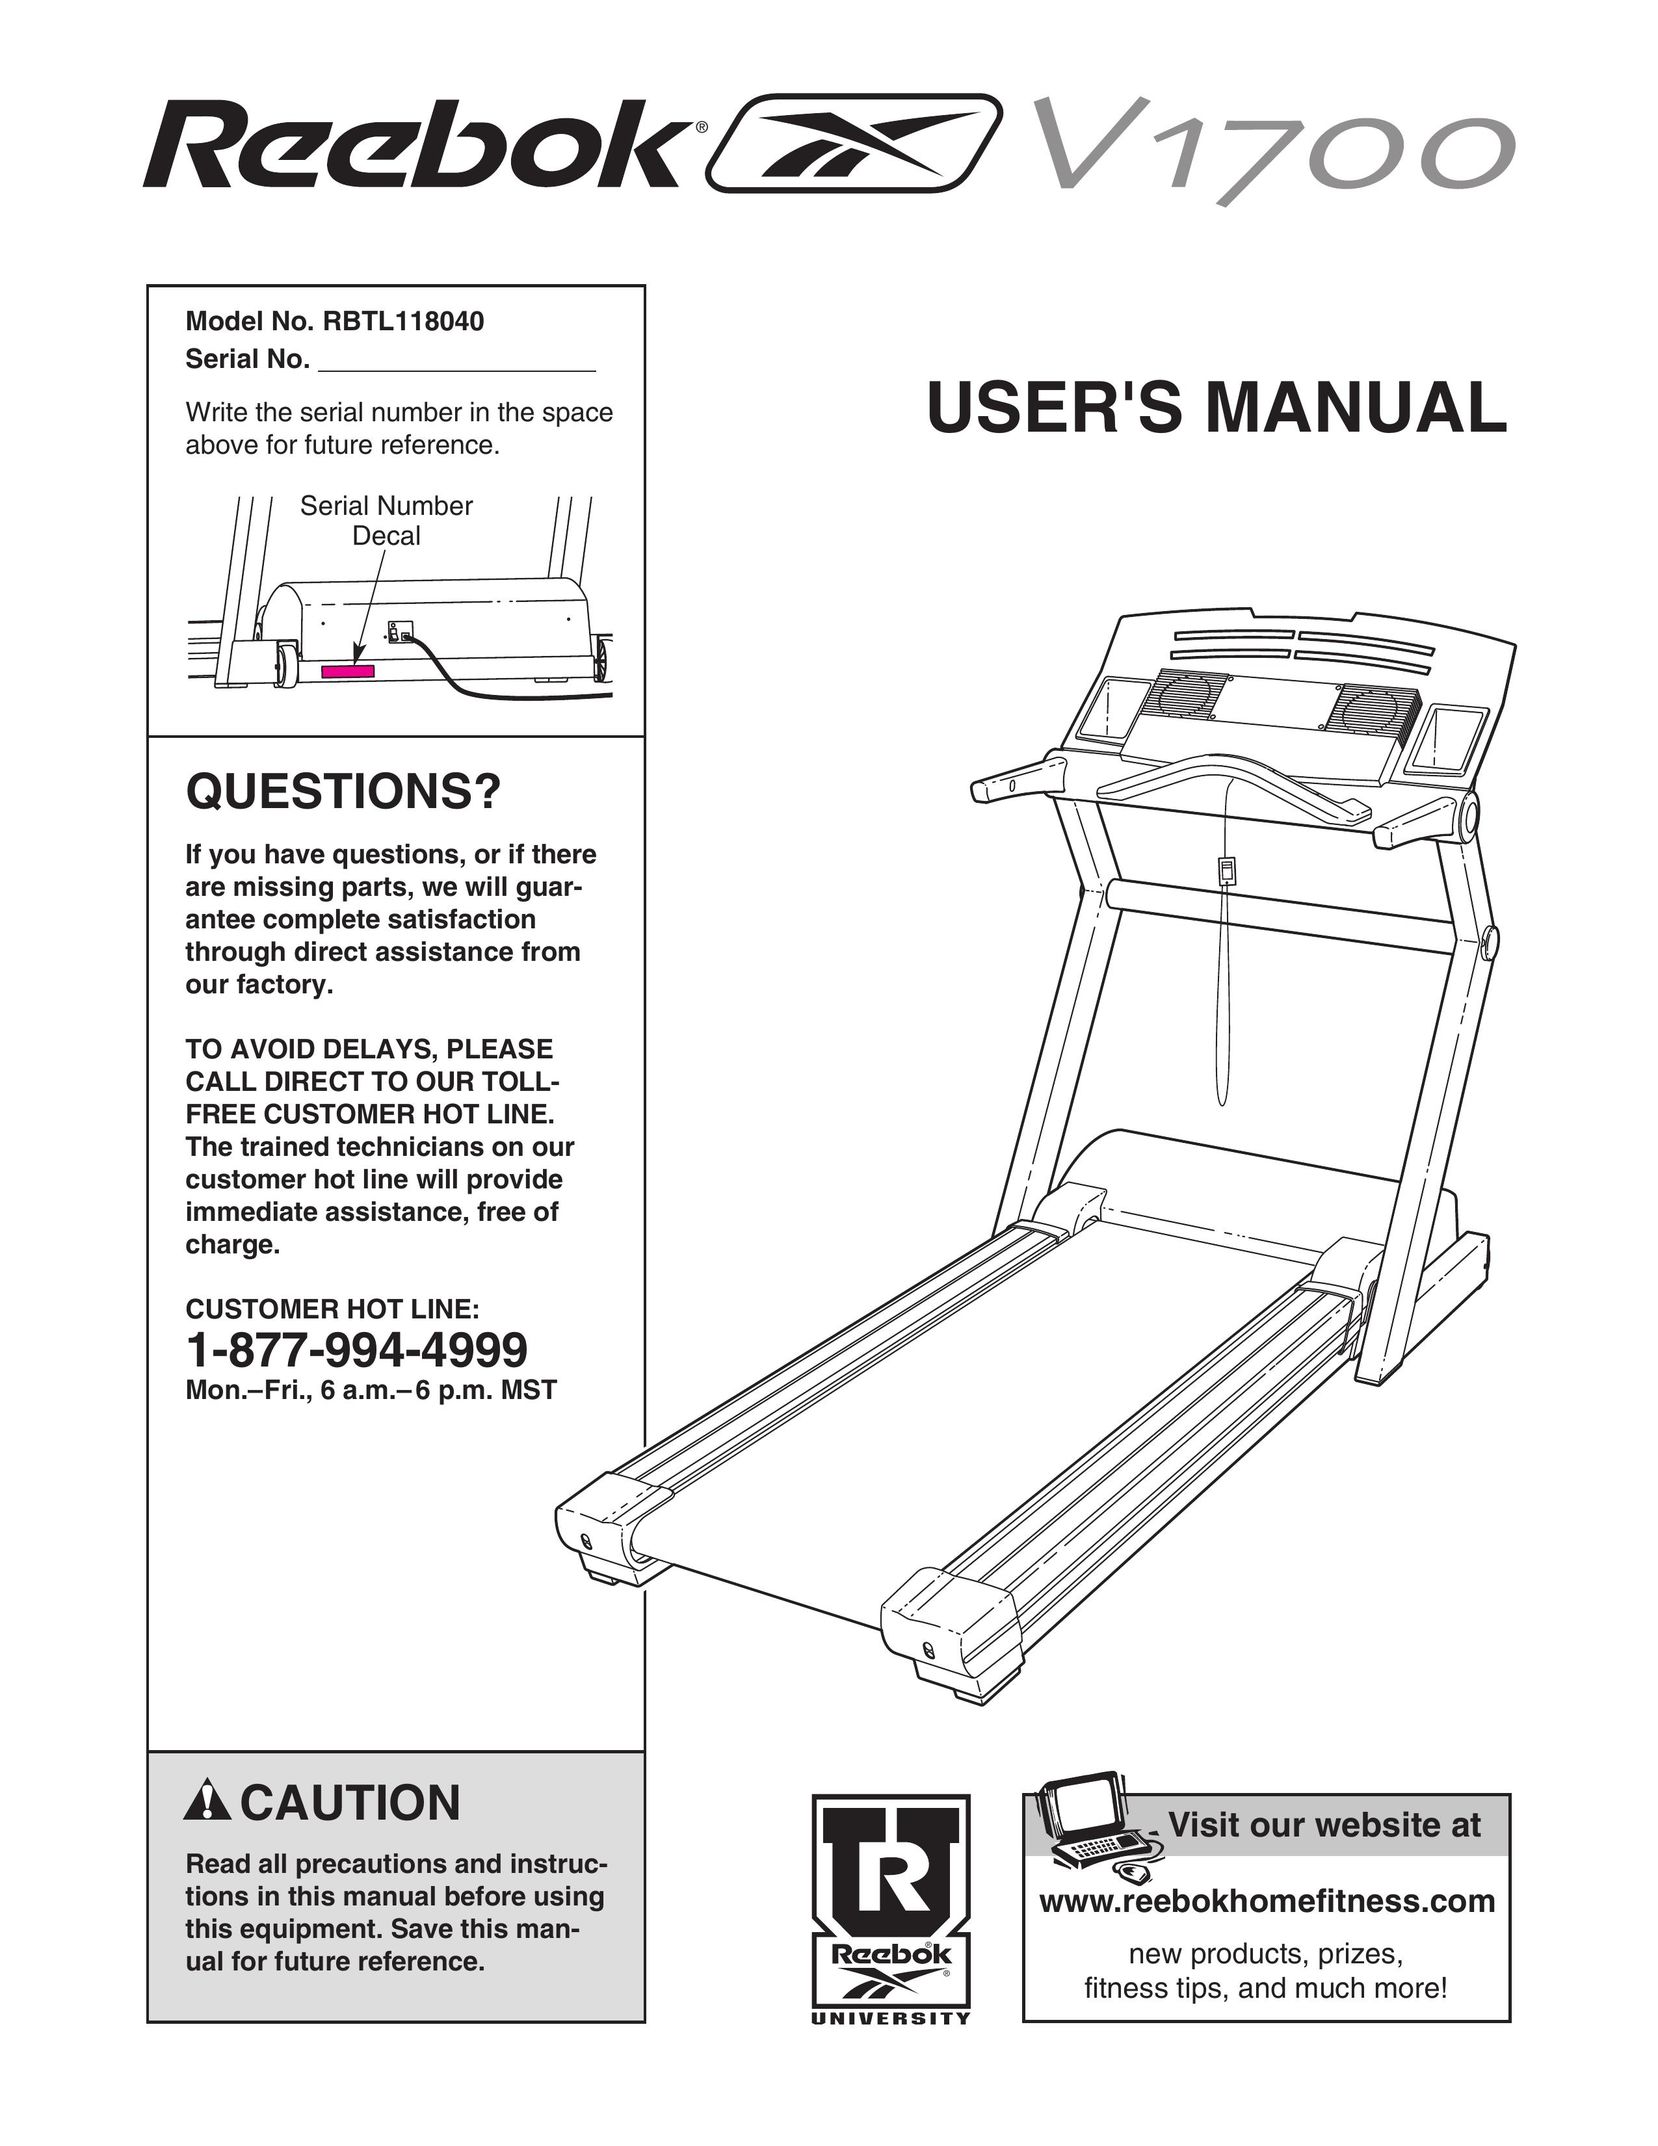 Reebok Fitness RBTL118040 Treadmill User Manual